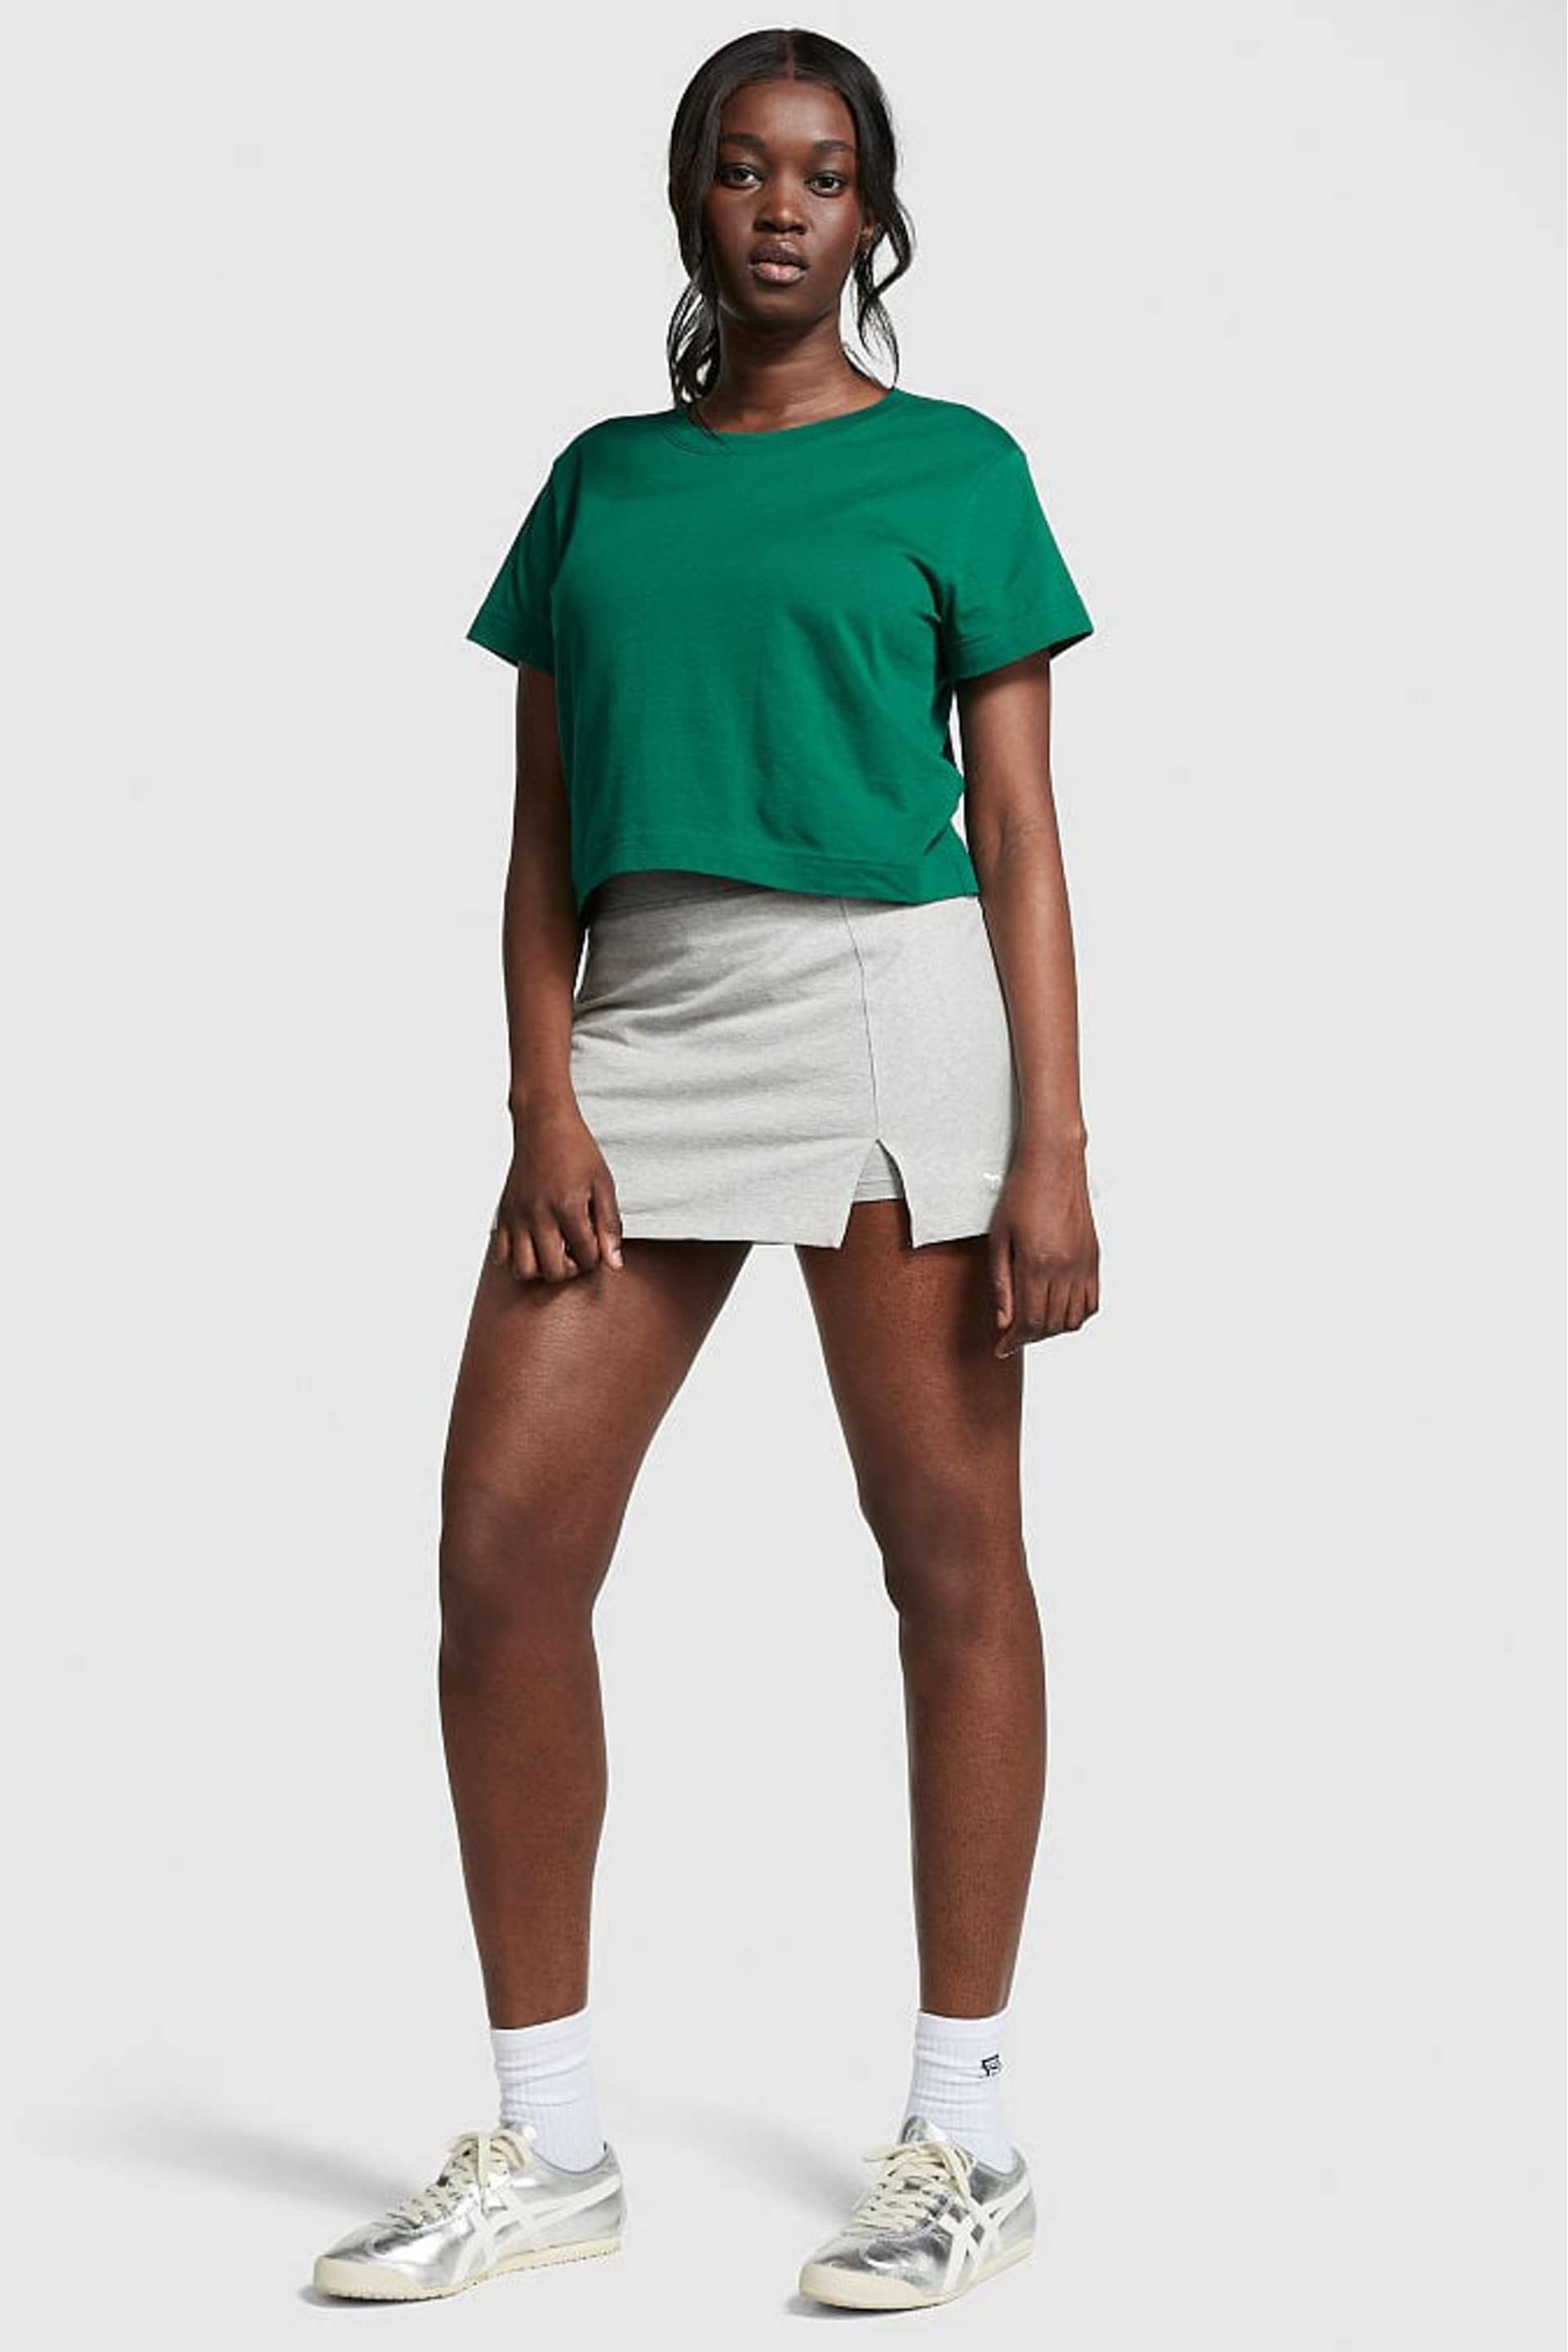 Victoria's Secret PINK Garnet Green Short Sleeve Shrunken T-Shirt - Image 3 of 4